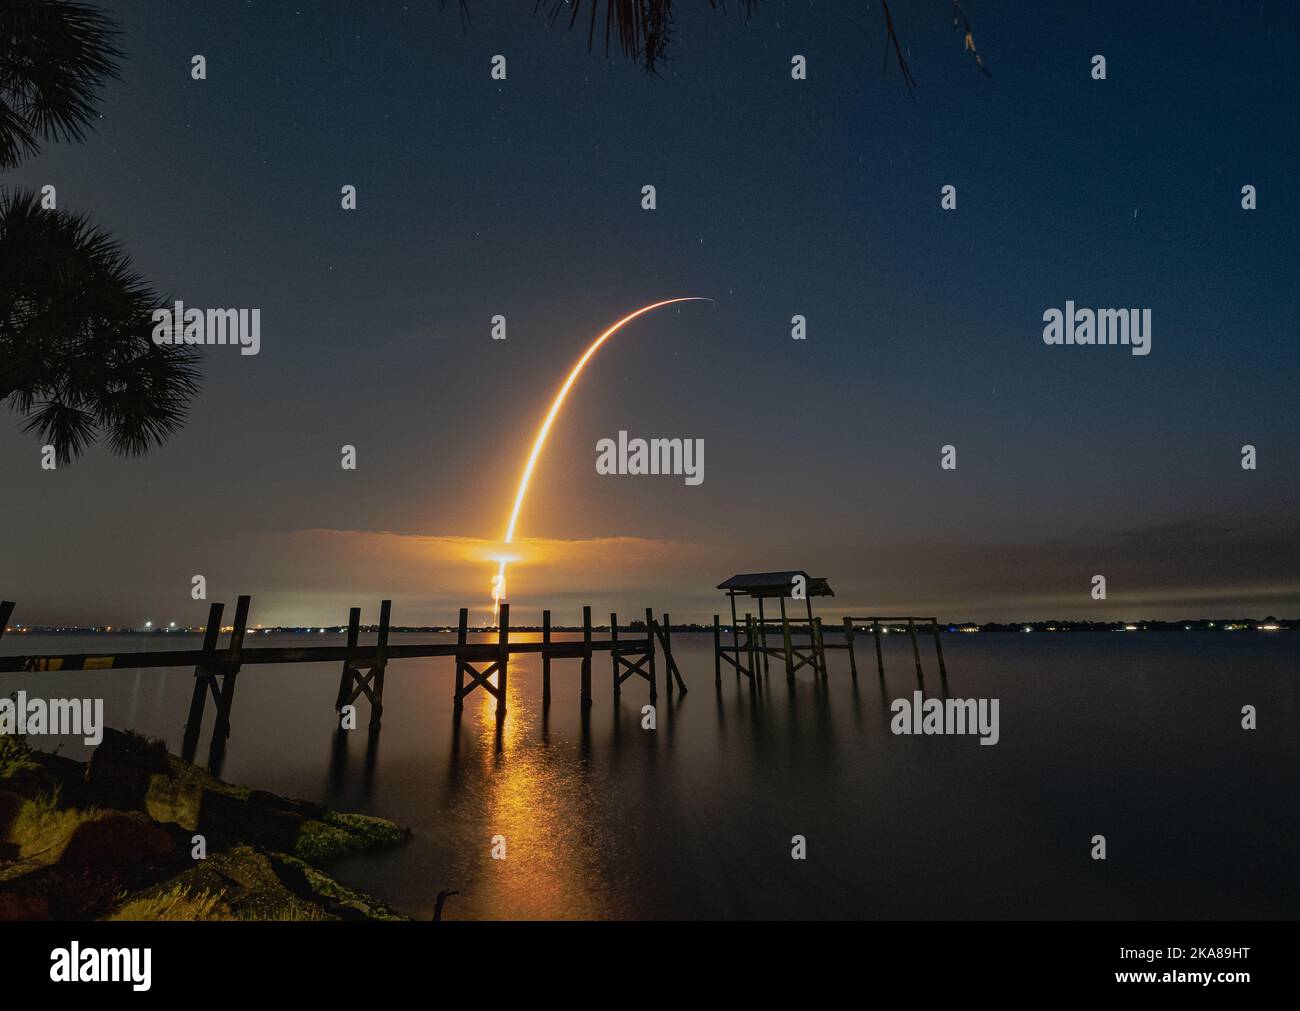 Una bella foto di un molo di legno sulla riva del lago con un lancio missilistico al cielo dell'alba sullo sfondo Foto Stock